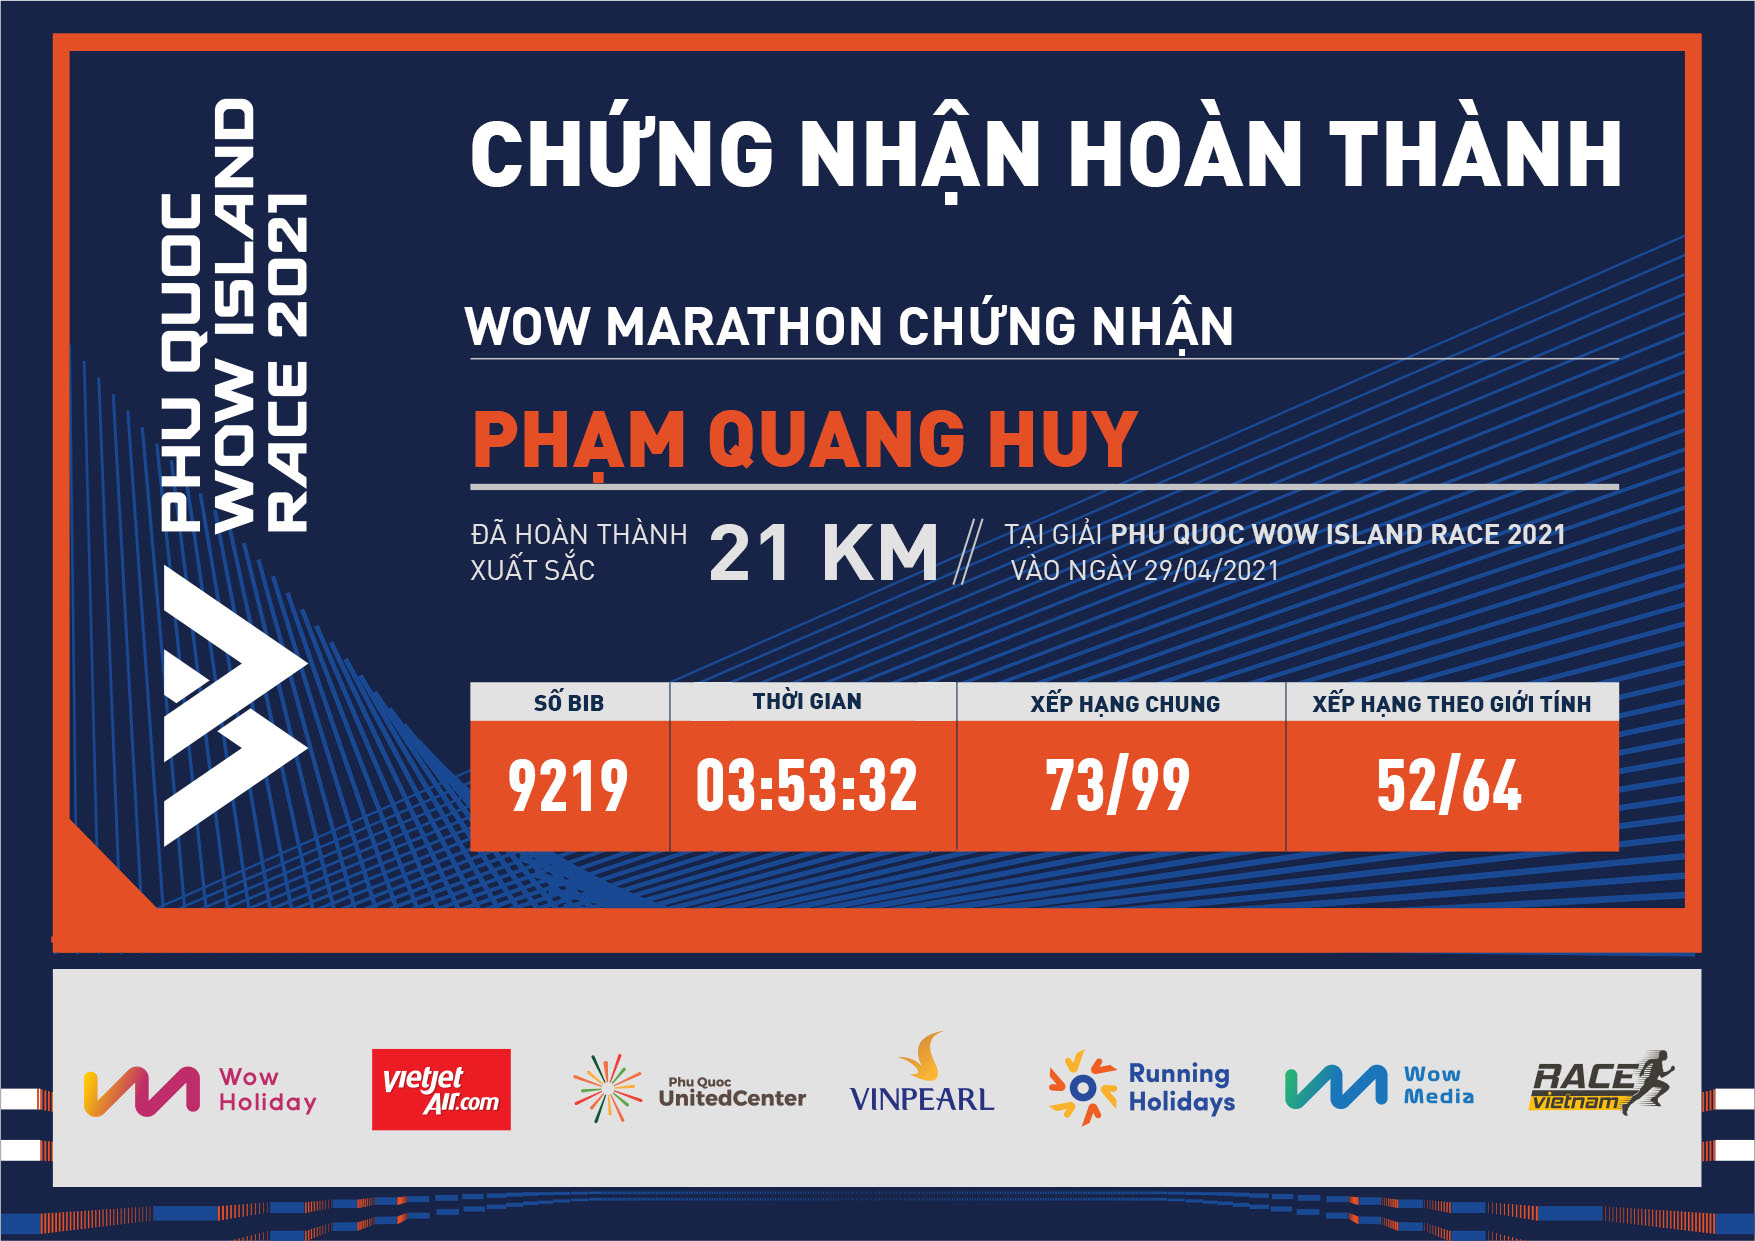 9219 - Phạm Quang Huy